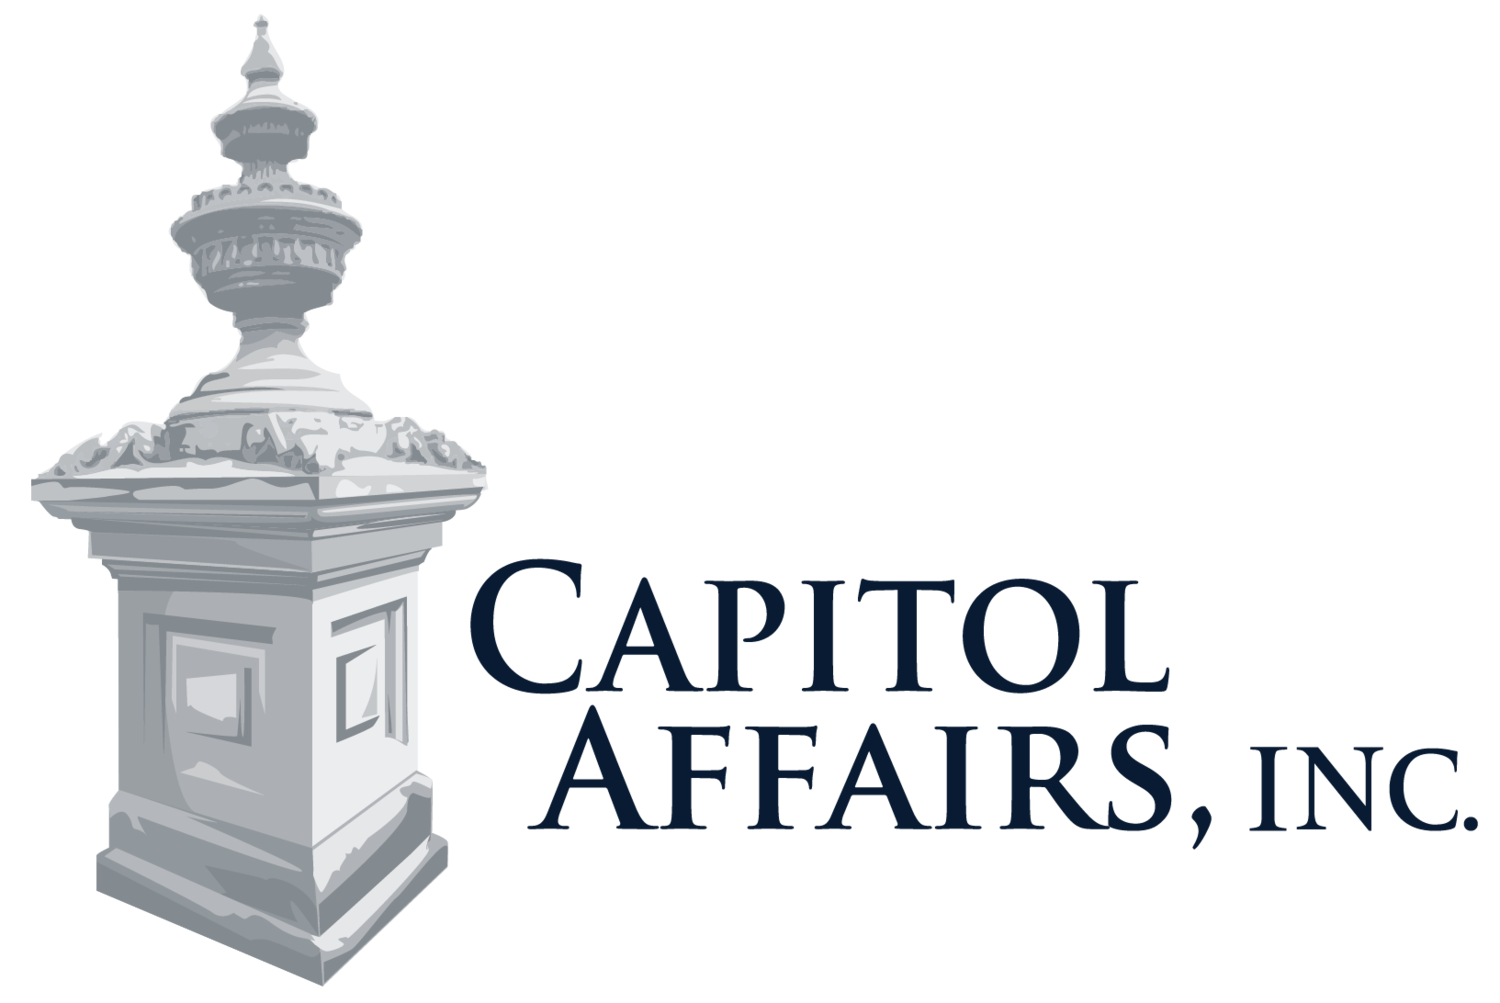 Capitol Affairs